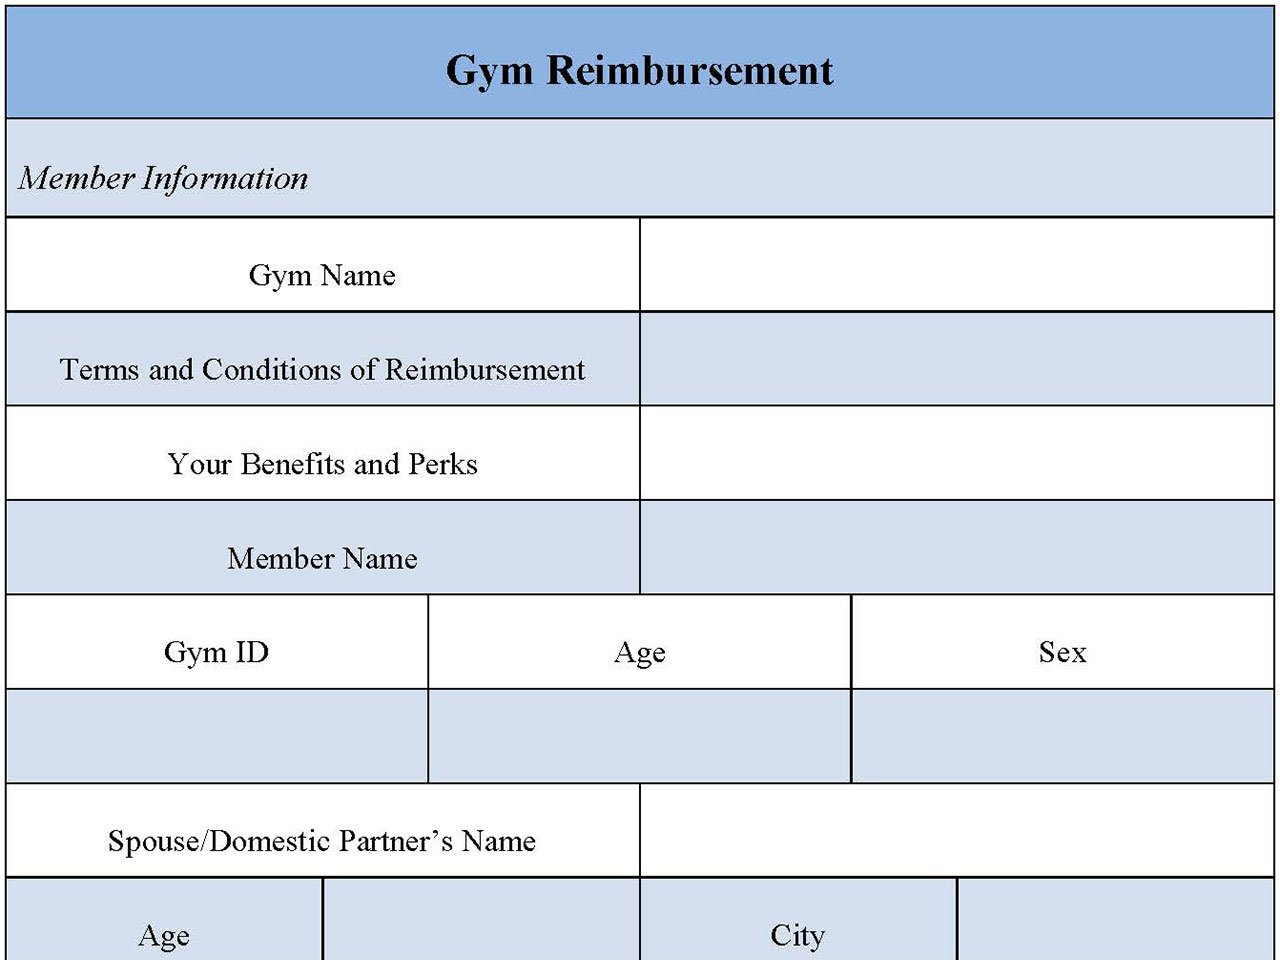 Gym Reimbursement Form